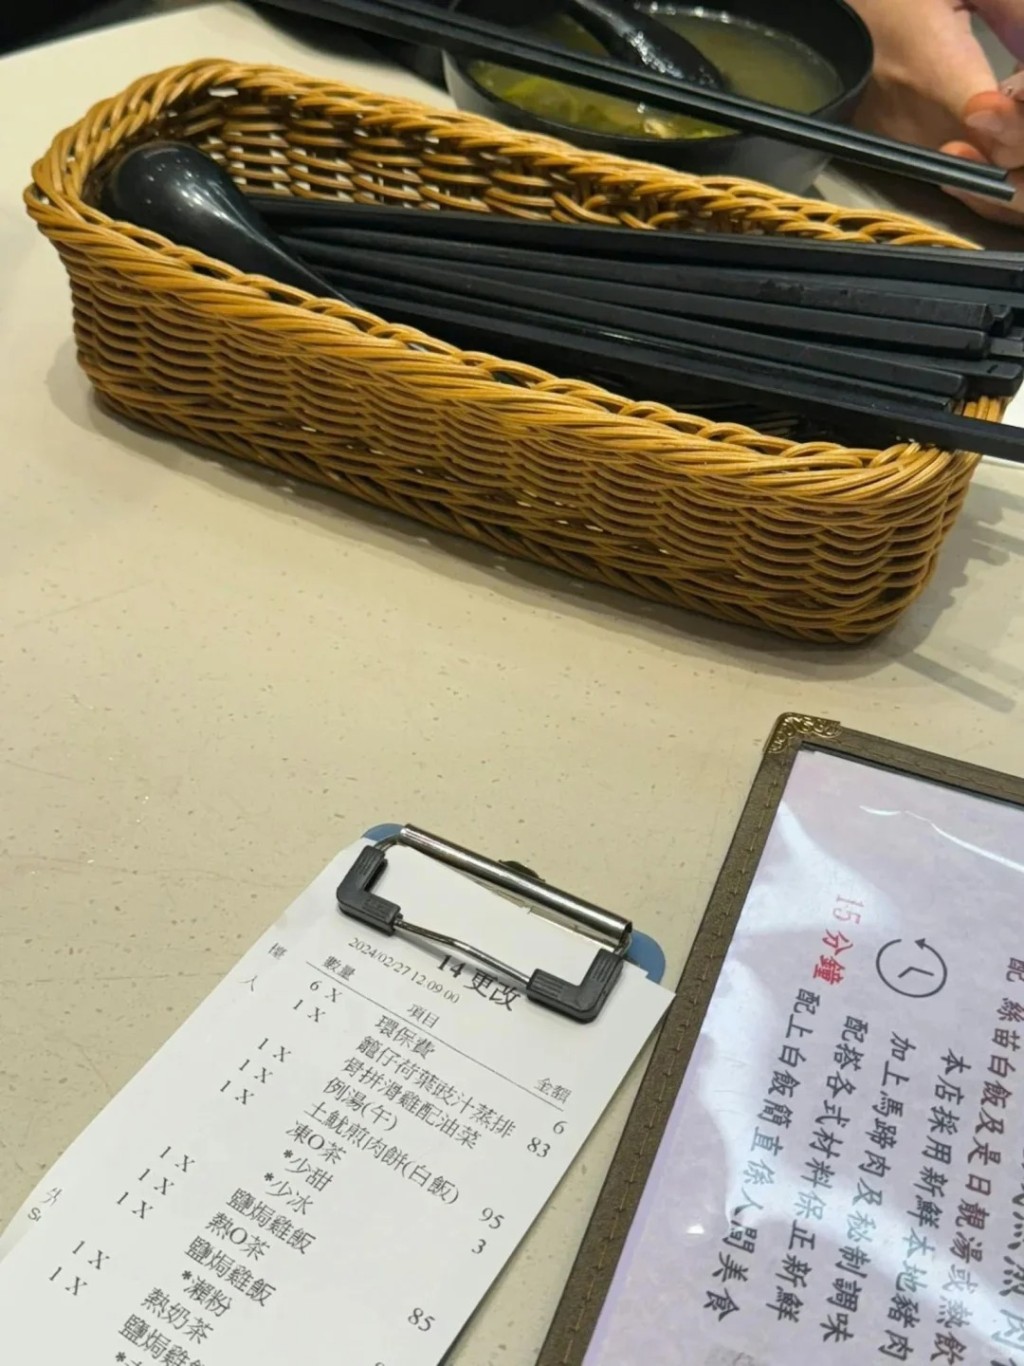 有網民在小紅書發文，指在香港「金X」餐廳被收取每位一元「環保費」。小紅書圖片